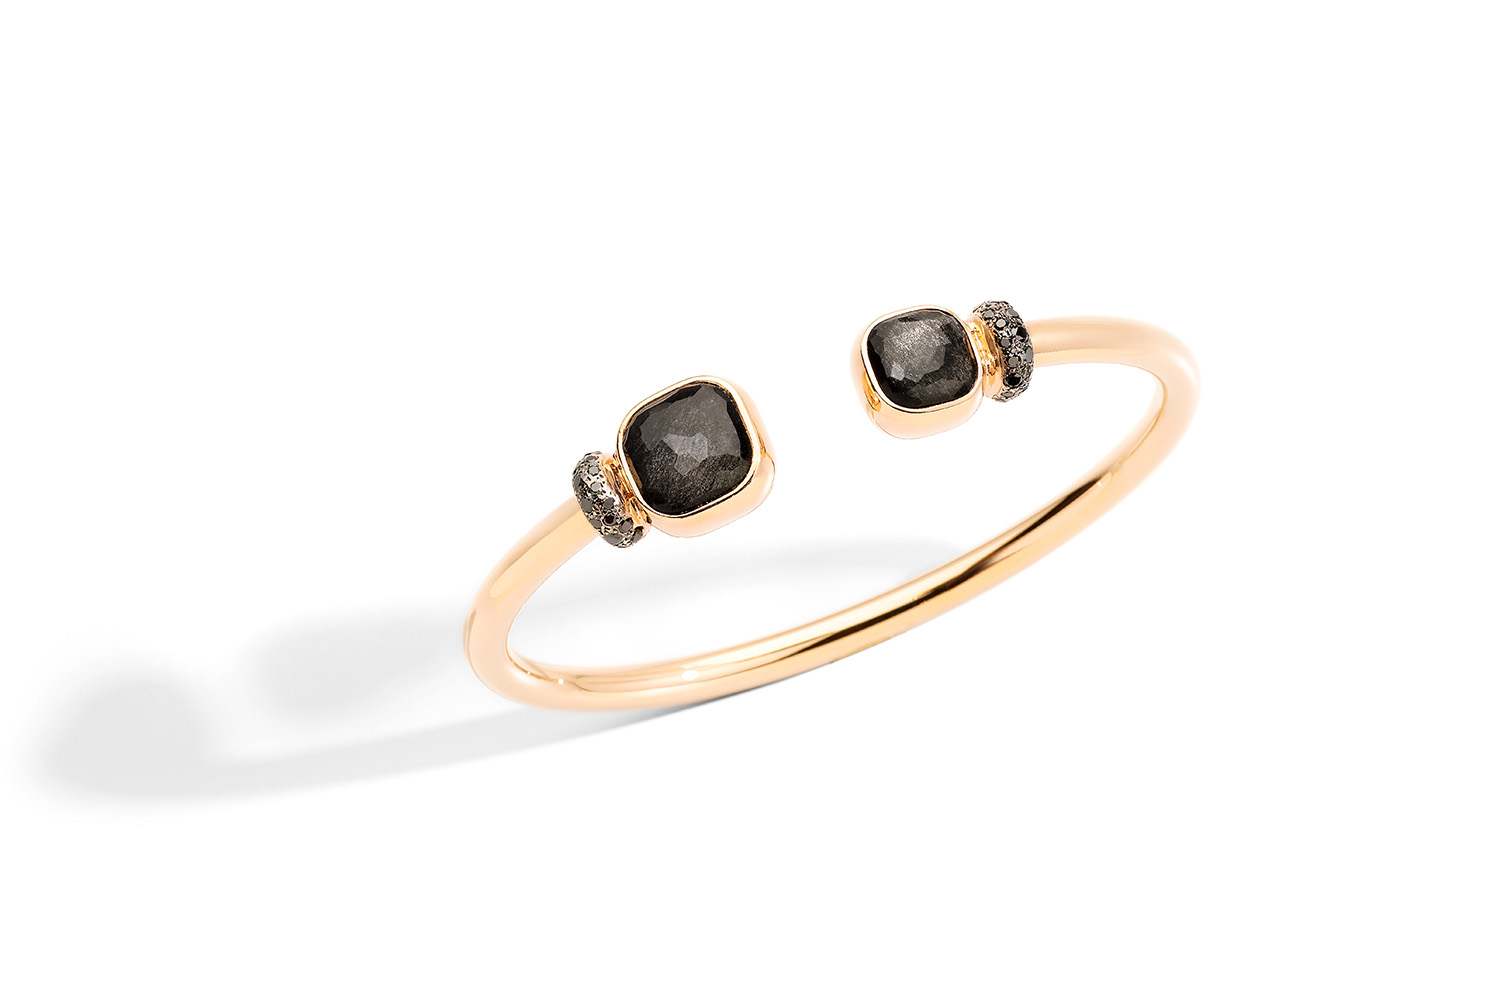 NUDO-bracelet-in-rose-gold-with-obsidian-and-black-diamonds-by-Pomellato-–-kopia